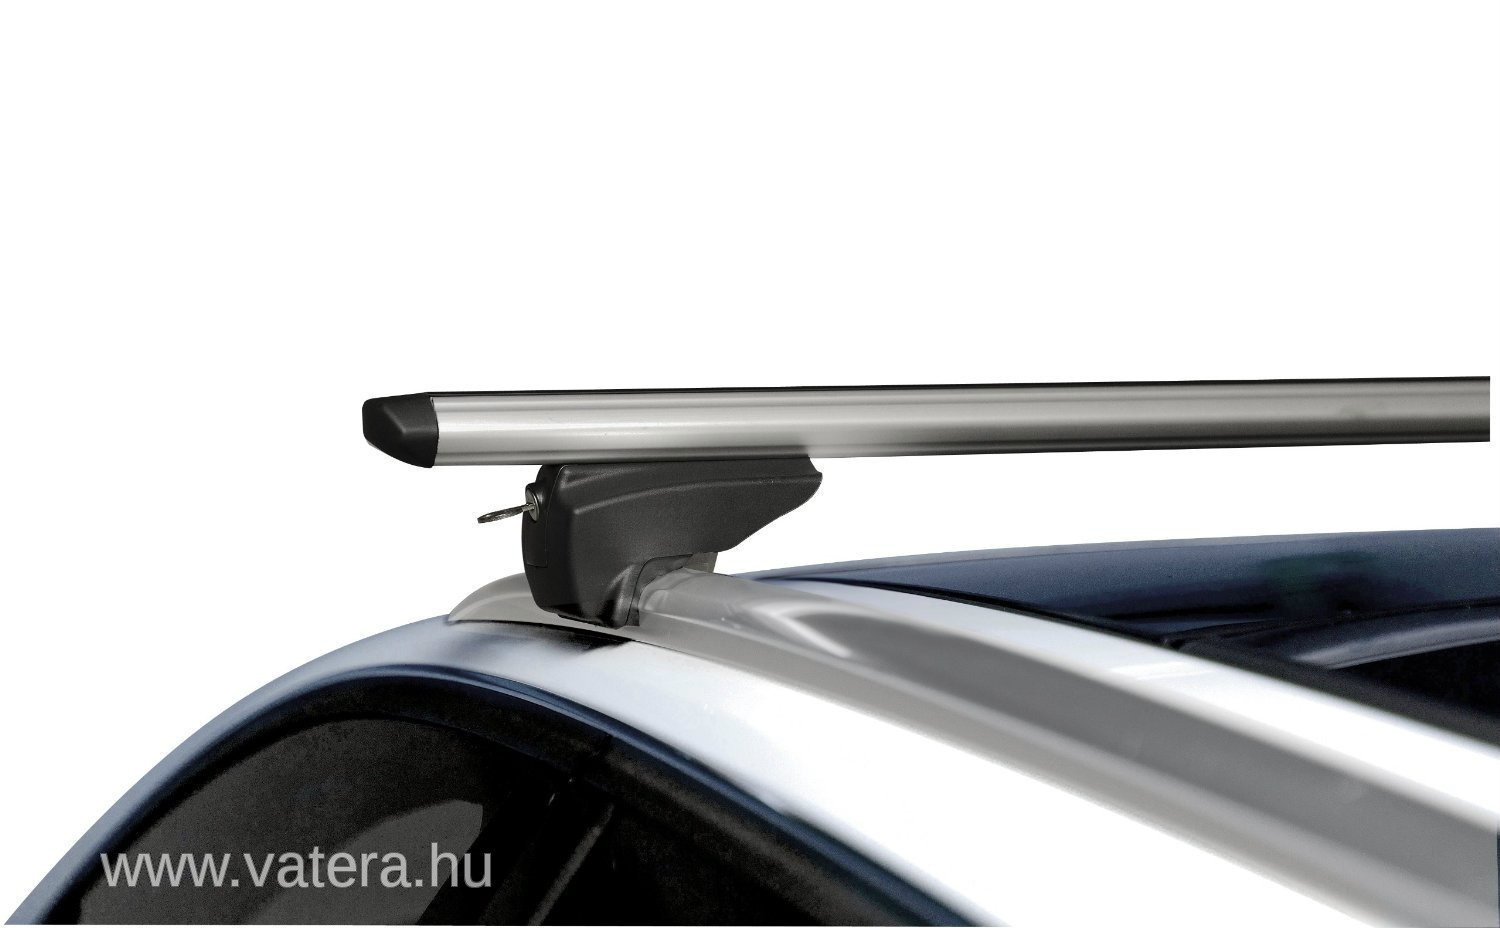 Багажник на крышу Menabo Tiger Black 120 см на интегрированные рейлинги. Багажник на крышу Audi q5 (с релингами), Votex. Фиат Толенто 2016 рейлинги на крышу. Багажник на крышу Jaguar XF.